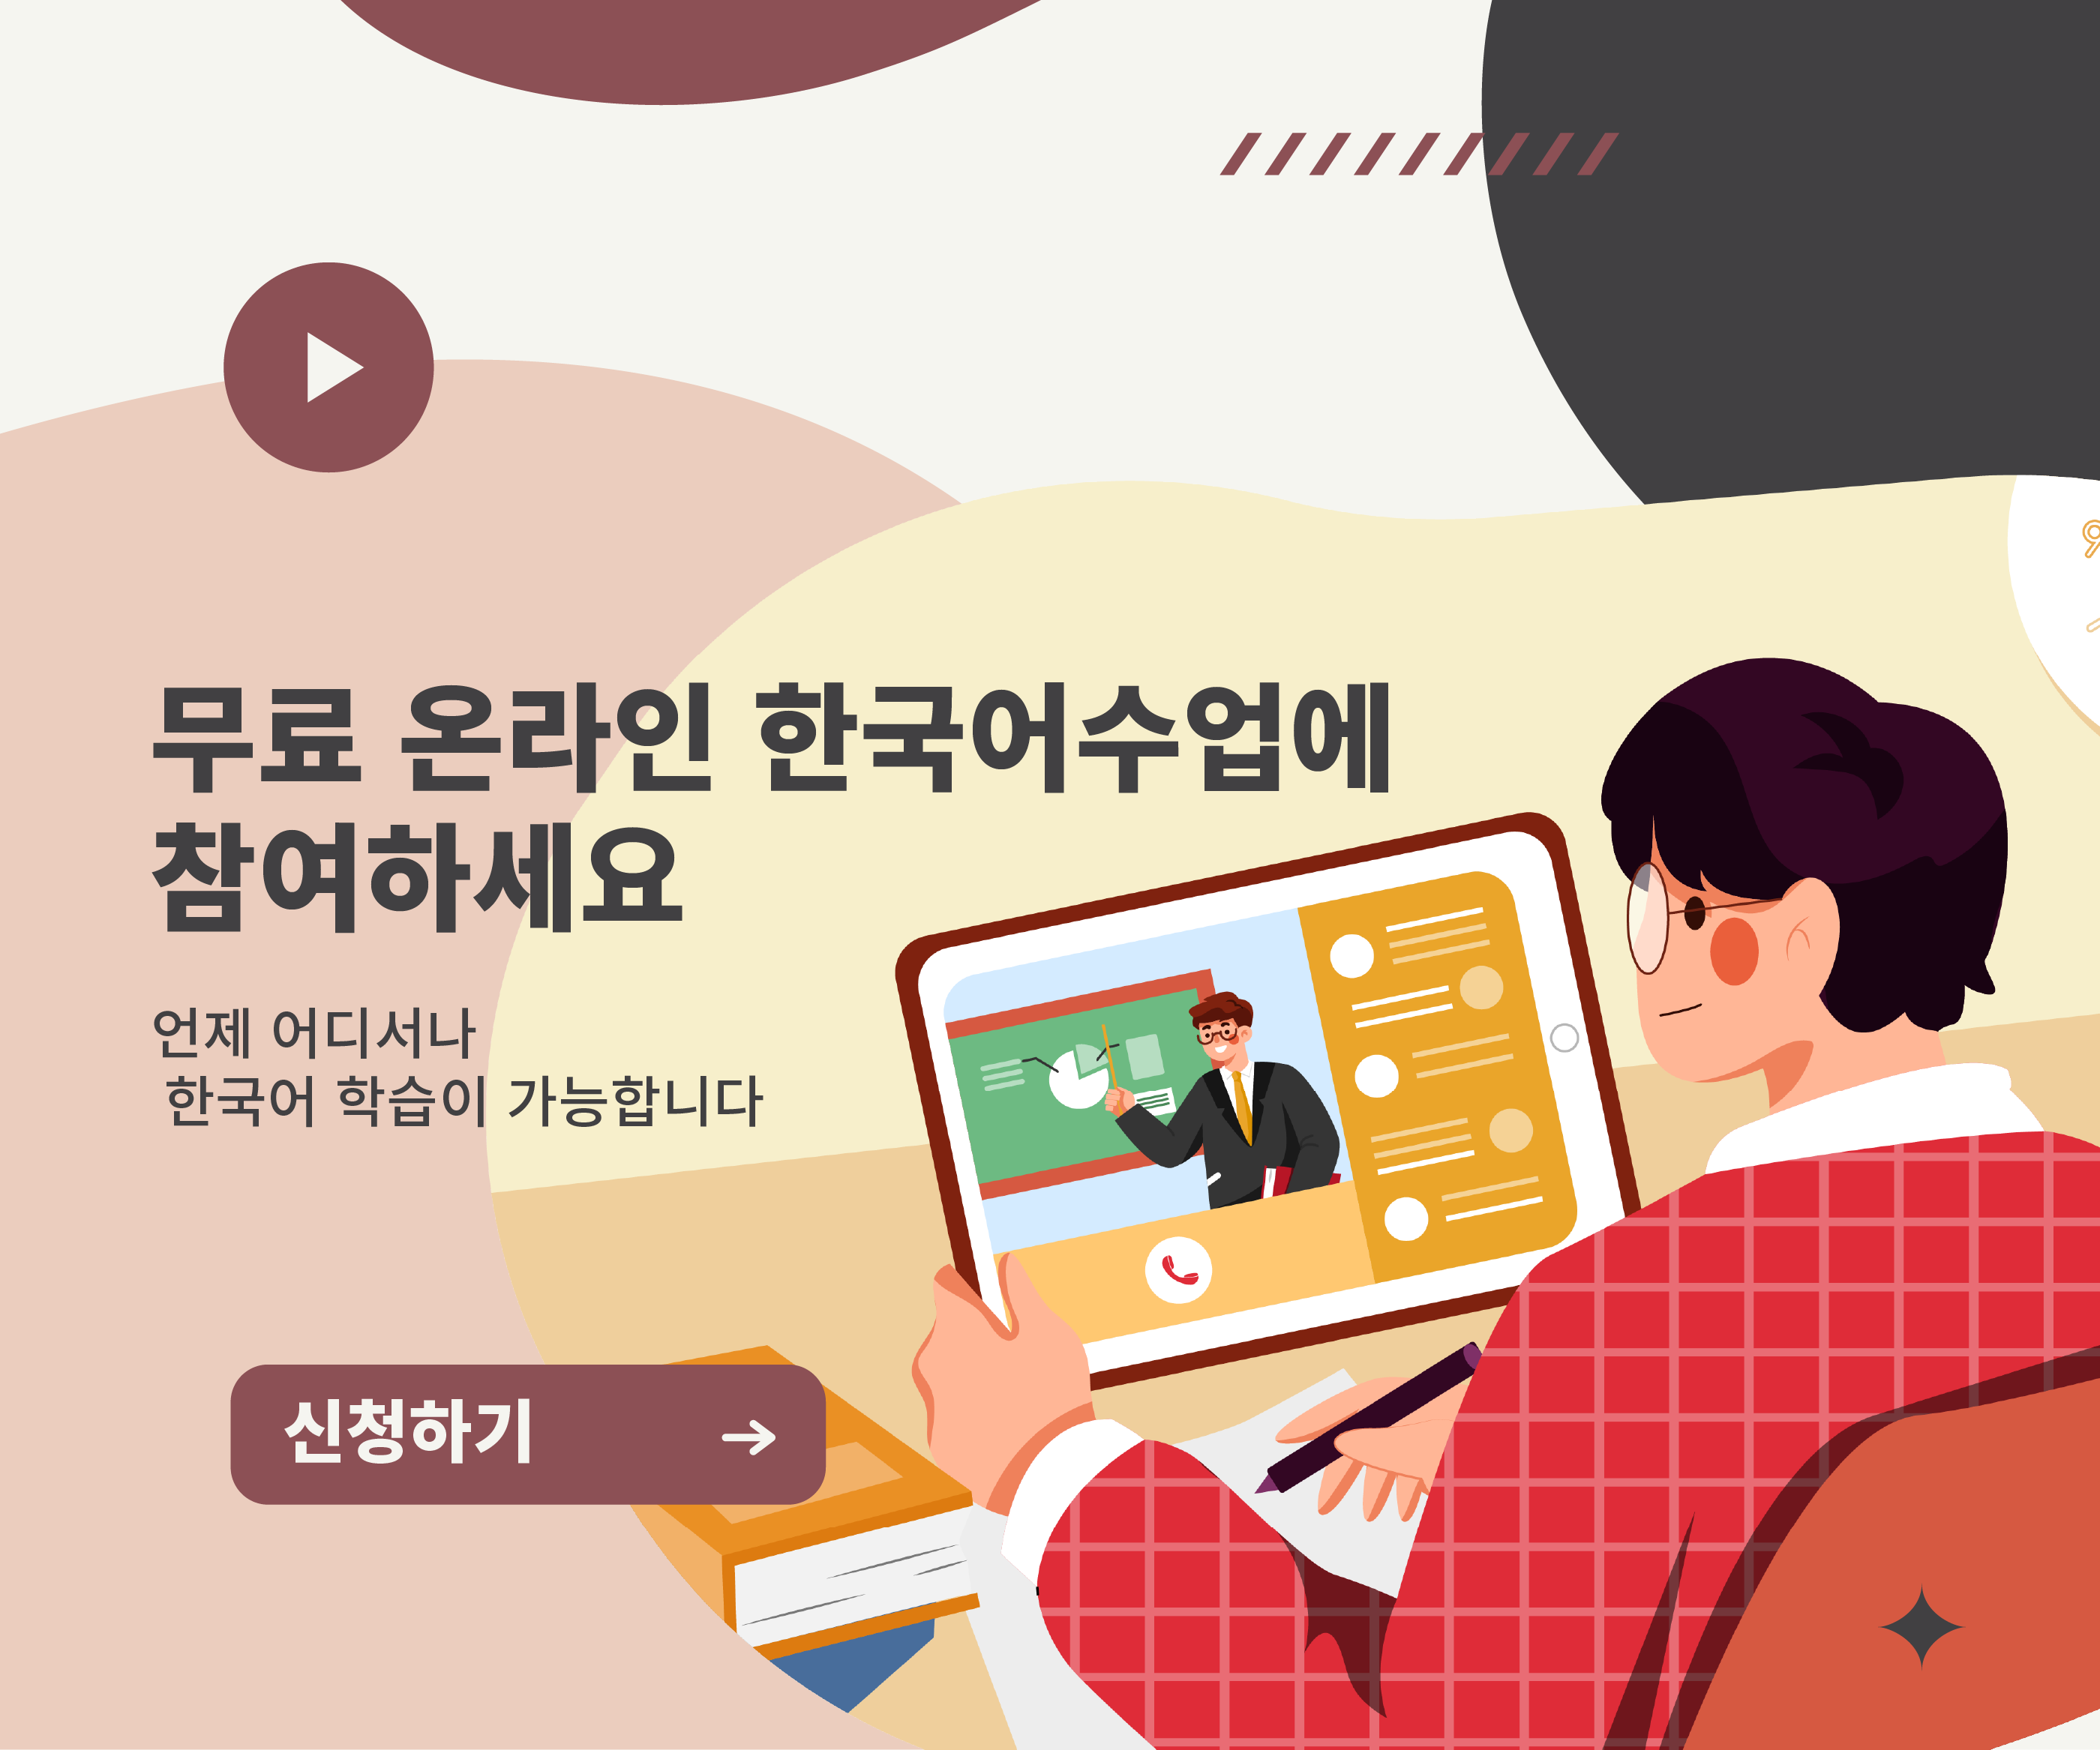 무료 온라인 한국어수업에 참여하세요.언제 어디서나 한국어 학습이 가능합니다.신청하기